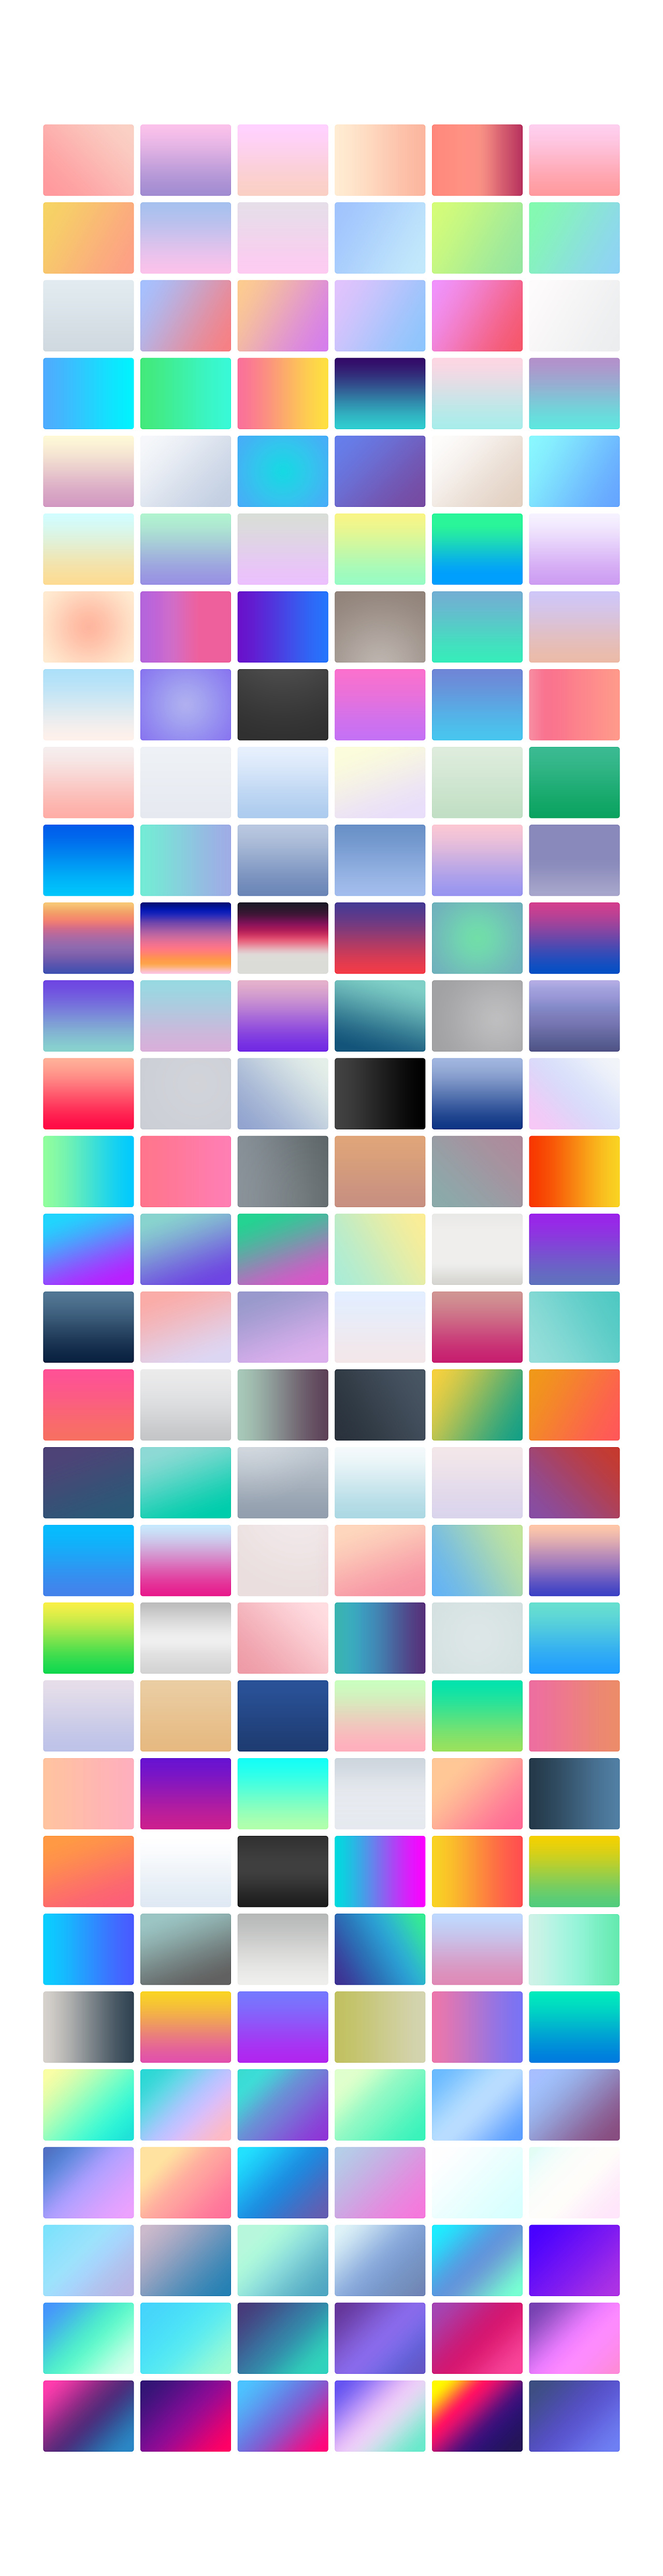 48种颜色名称及图片 - 动态图库网